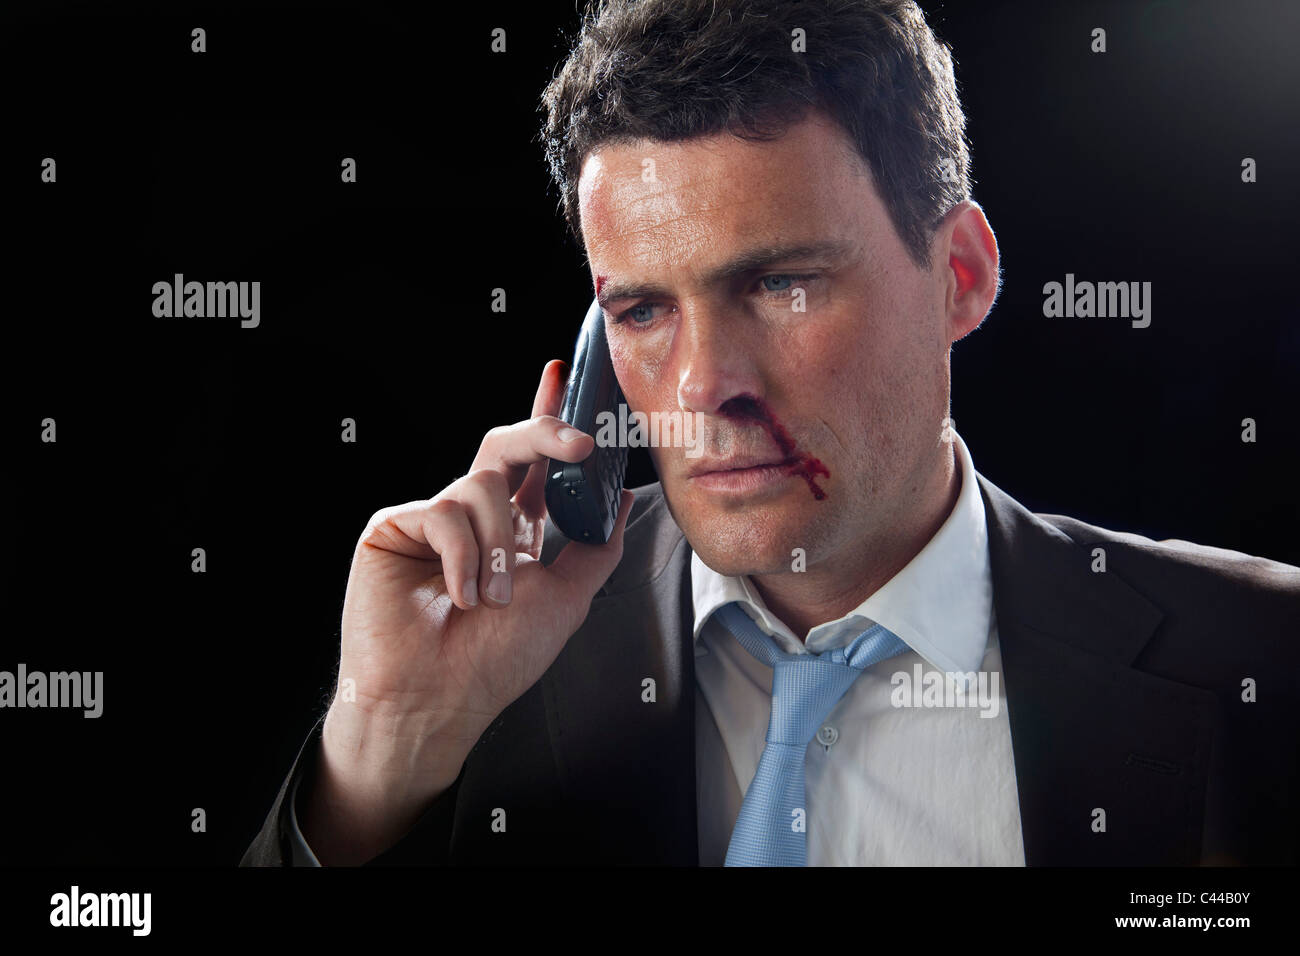 Ein Geschäftsmann mit Prellungen und eine blutige Nase mit seinem Handy  Stockfotografie - Alamy